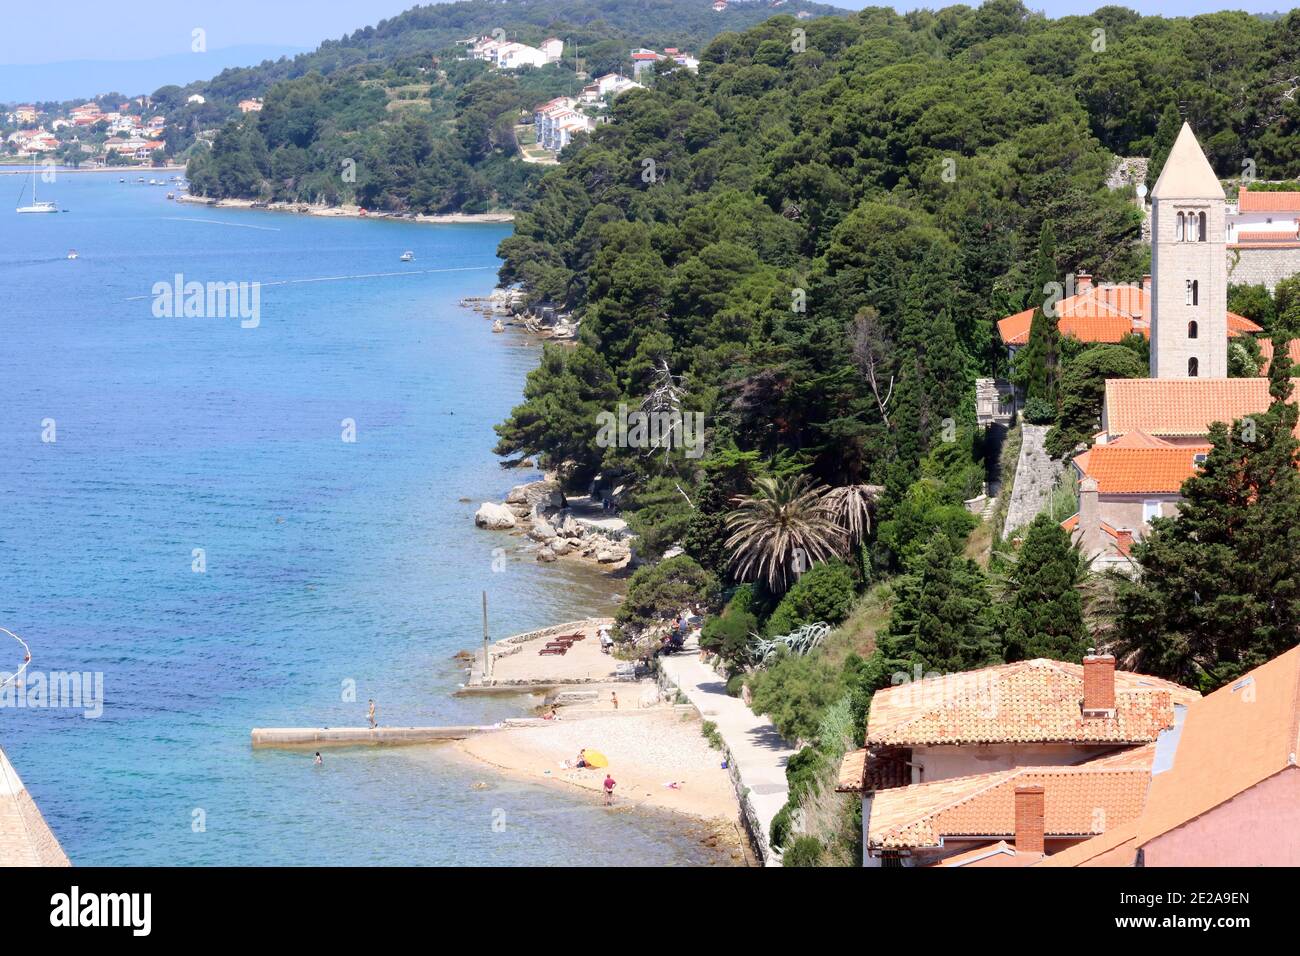 Croatie, région de Kvarner, île de Rab, ville de Rab, vue sur la plage. Banque D'Images